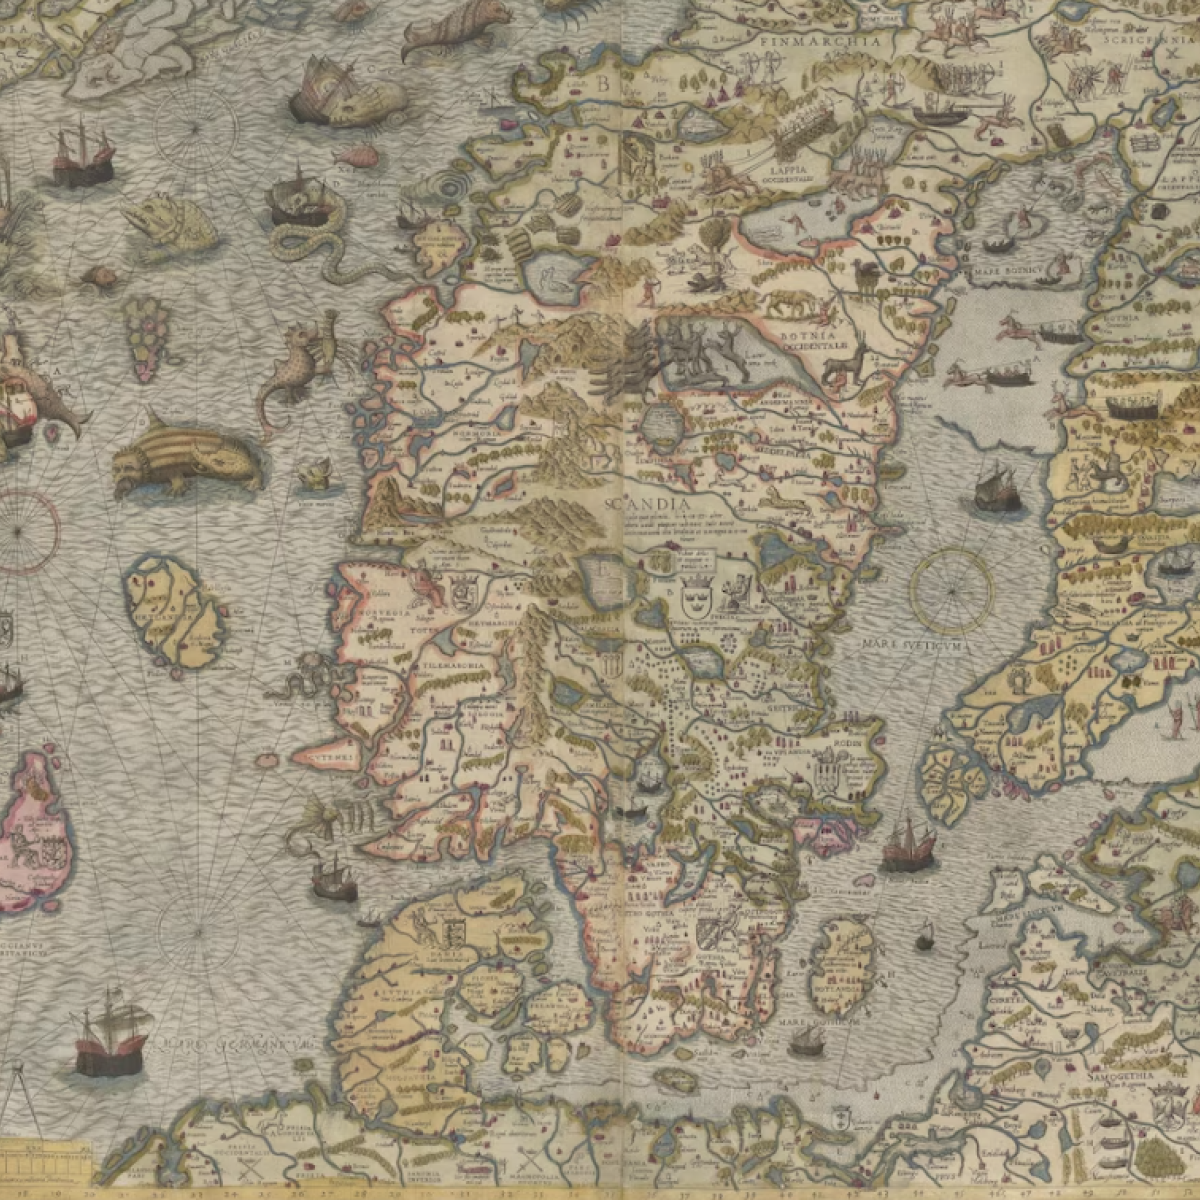 Na tej XVI-wiecznej mapie roi się od morskich potworów. Ich przedstawienia nie są czystą fantazją